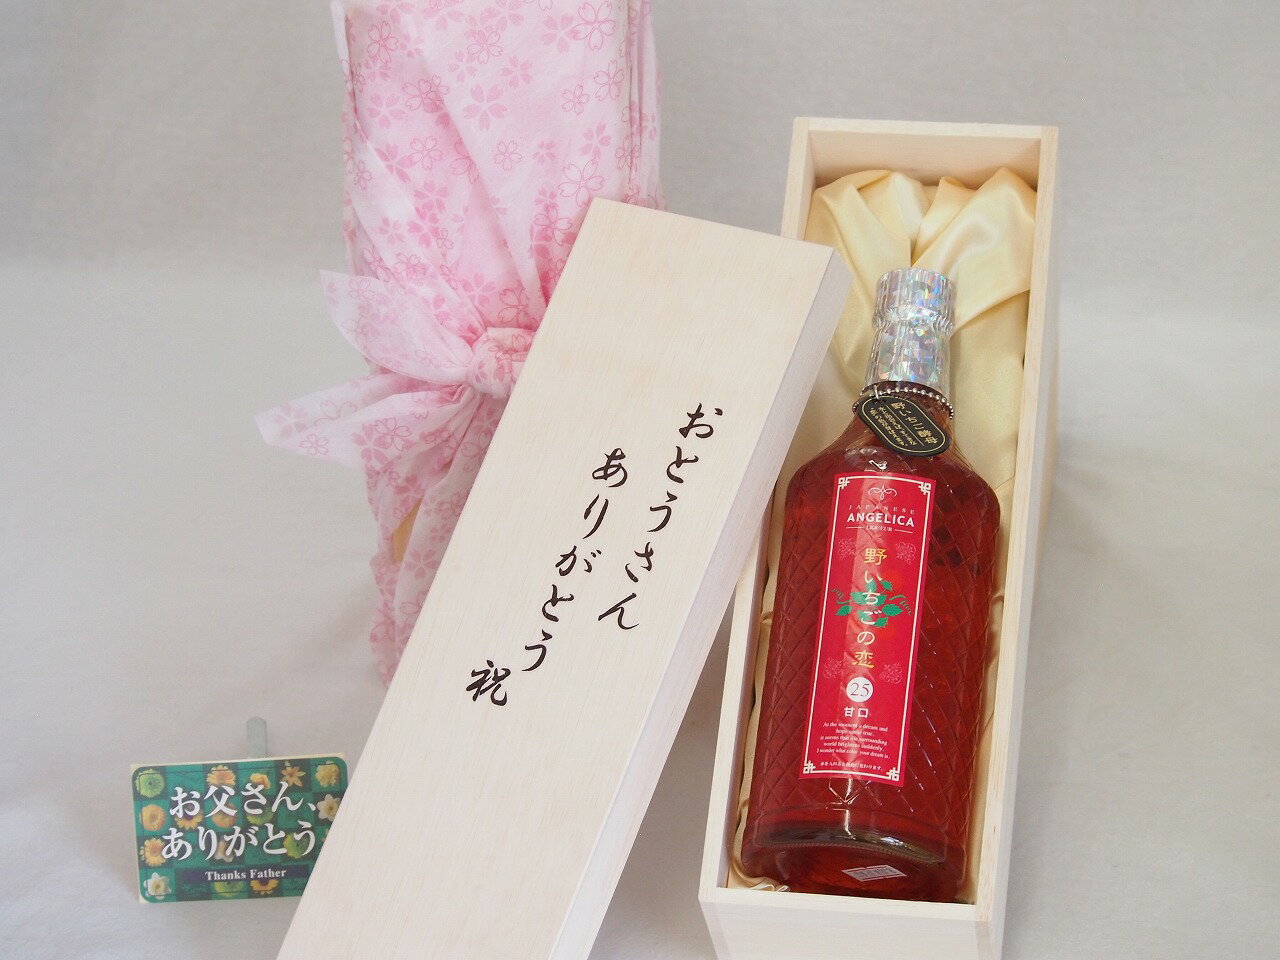 父の日 おとうさんありがとう木箱セット 神楽酒造 野イチゴの恋甘口 (宮崎県) 720ml 父の日カード付